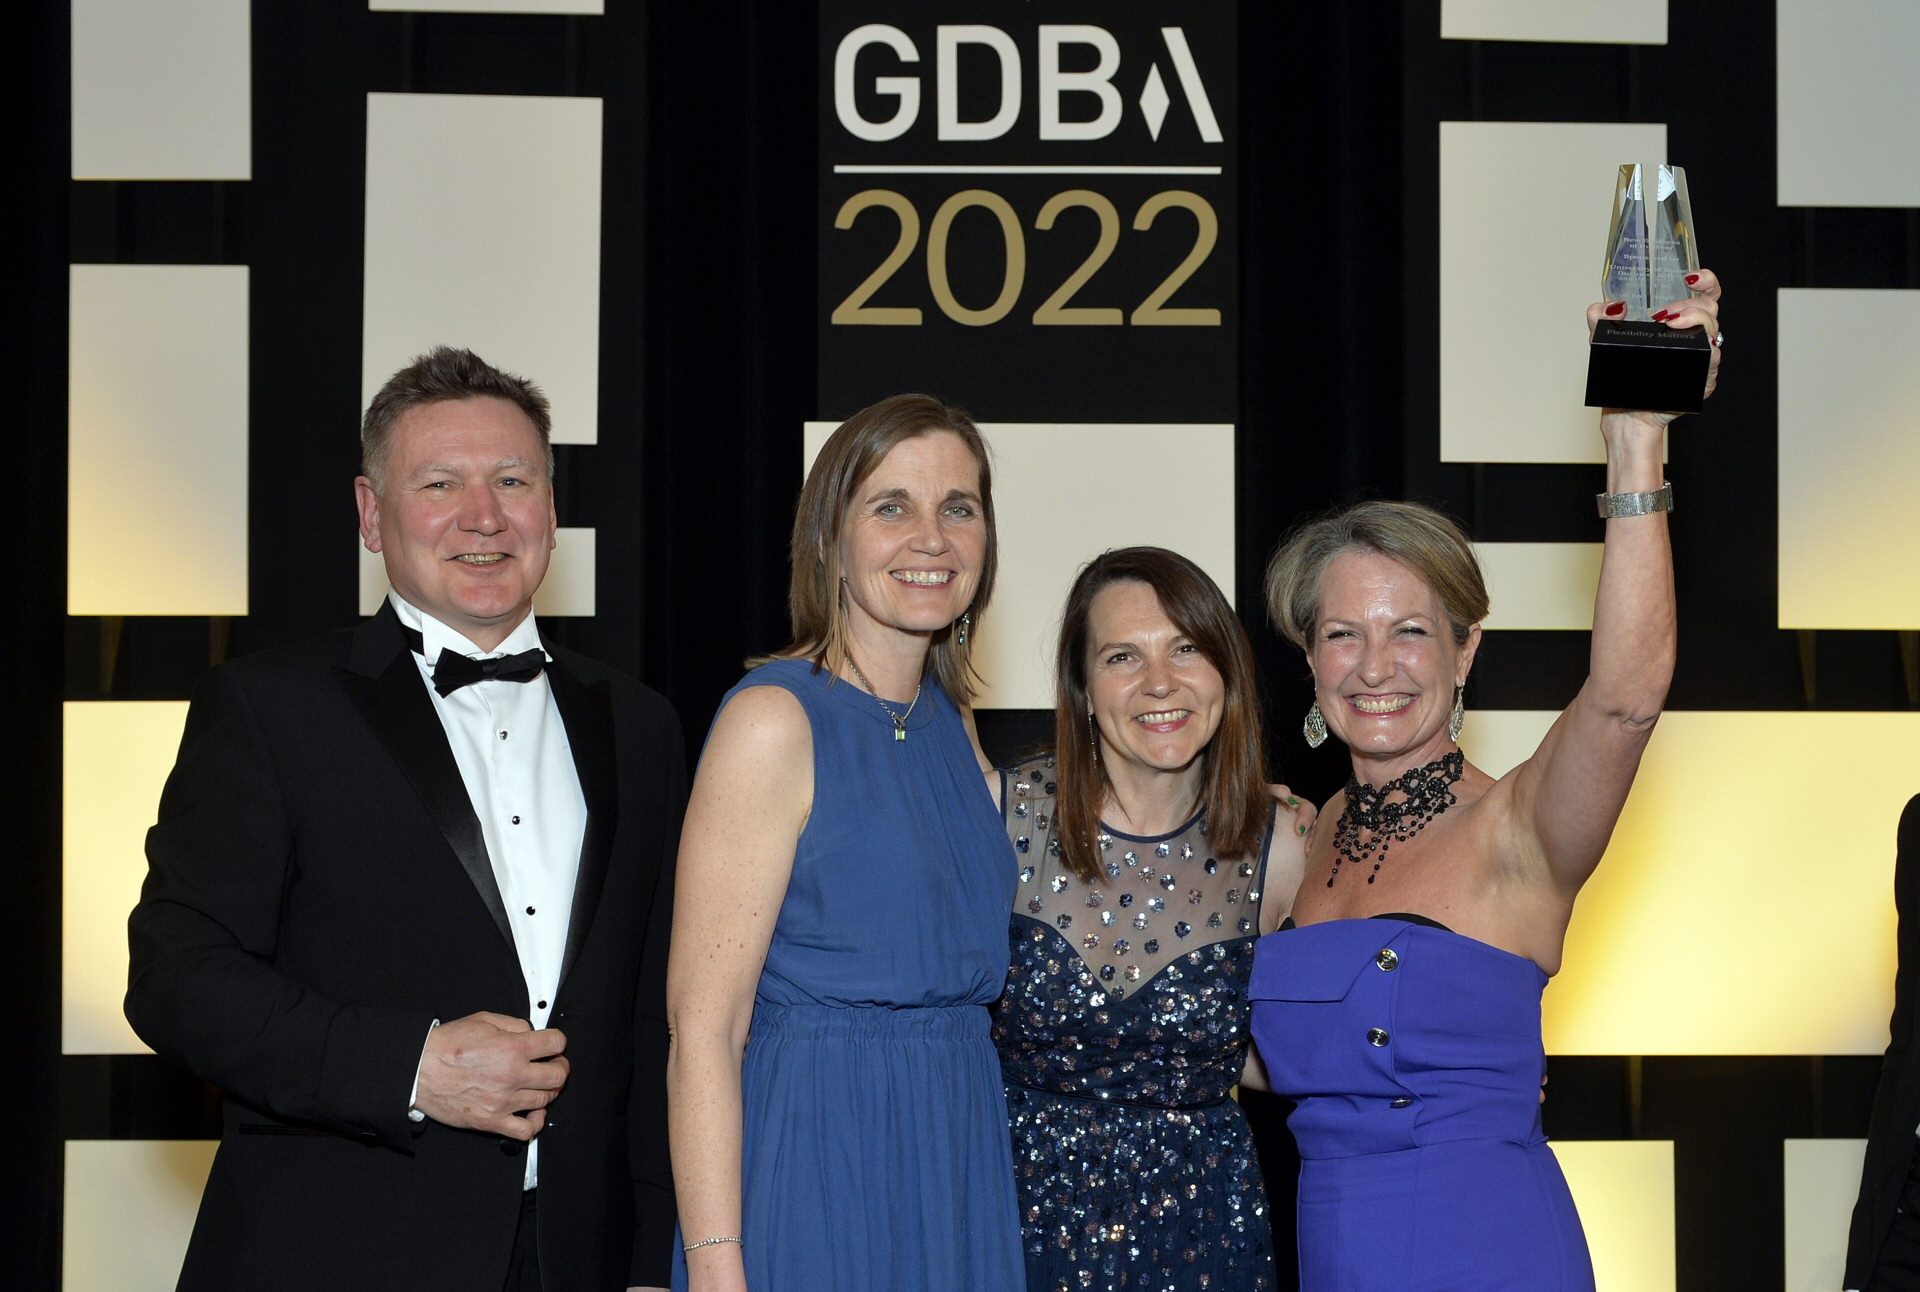 Gatwick Diamond Business Award 2022 - winning picture